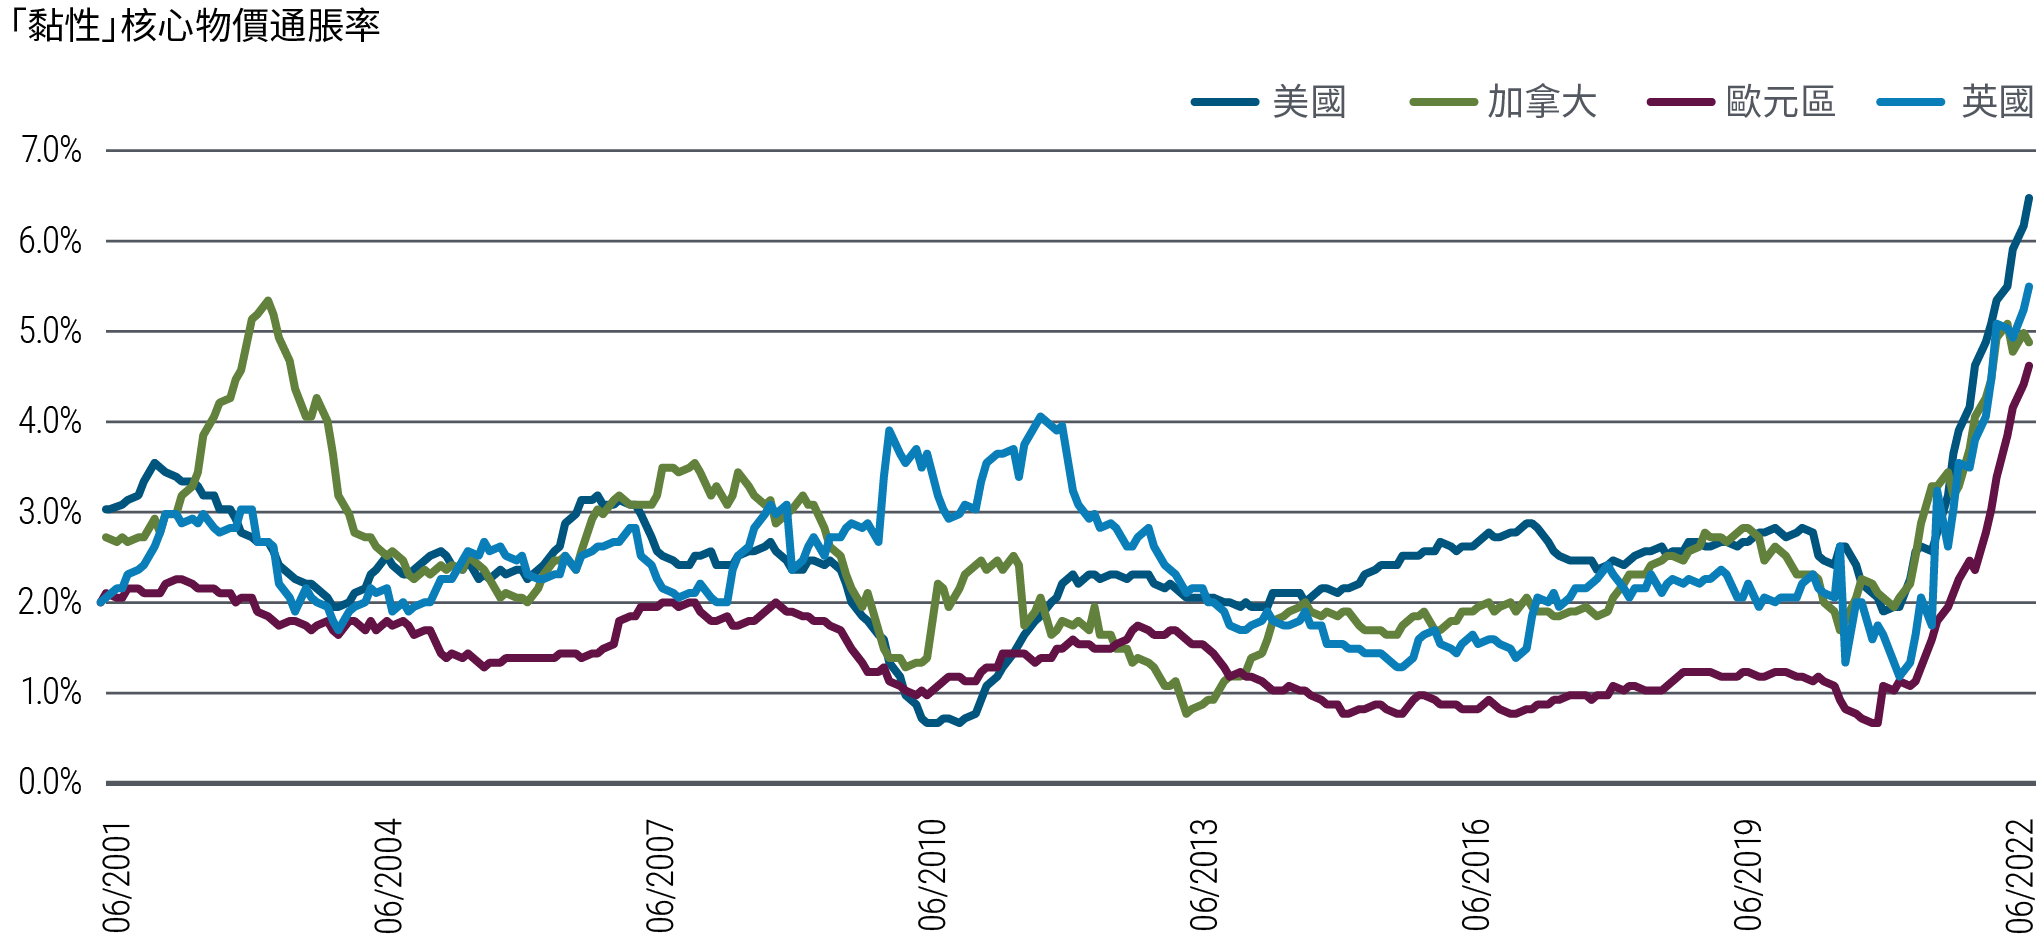 折線圖顯示美國、加拿大、英國和歐元區在2001年6月至2022年7月期間的年率化「黏性」核心物價通脹率。「黏性」定義見圖表下說明。這些地區的黏性消費物價指數在近期大幅上升，英國率先在2020年底上揚，其他地區亦在2021年初揚升。美國黏性消費物價指數已從2021年初略低於2%，上升至2022年7月31日的6.5%。歐元區的指數則從2020年底約0.7%，上升至2022年7月底的4.7%。圖表亦顯示，近期所有地區的黏性通脹都已超出約20年來的正常區間。